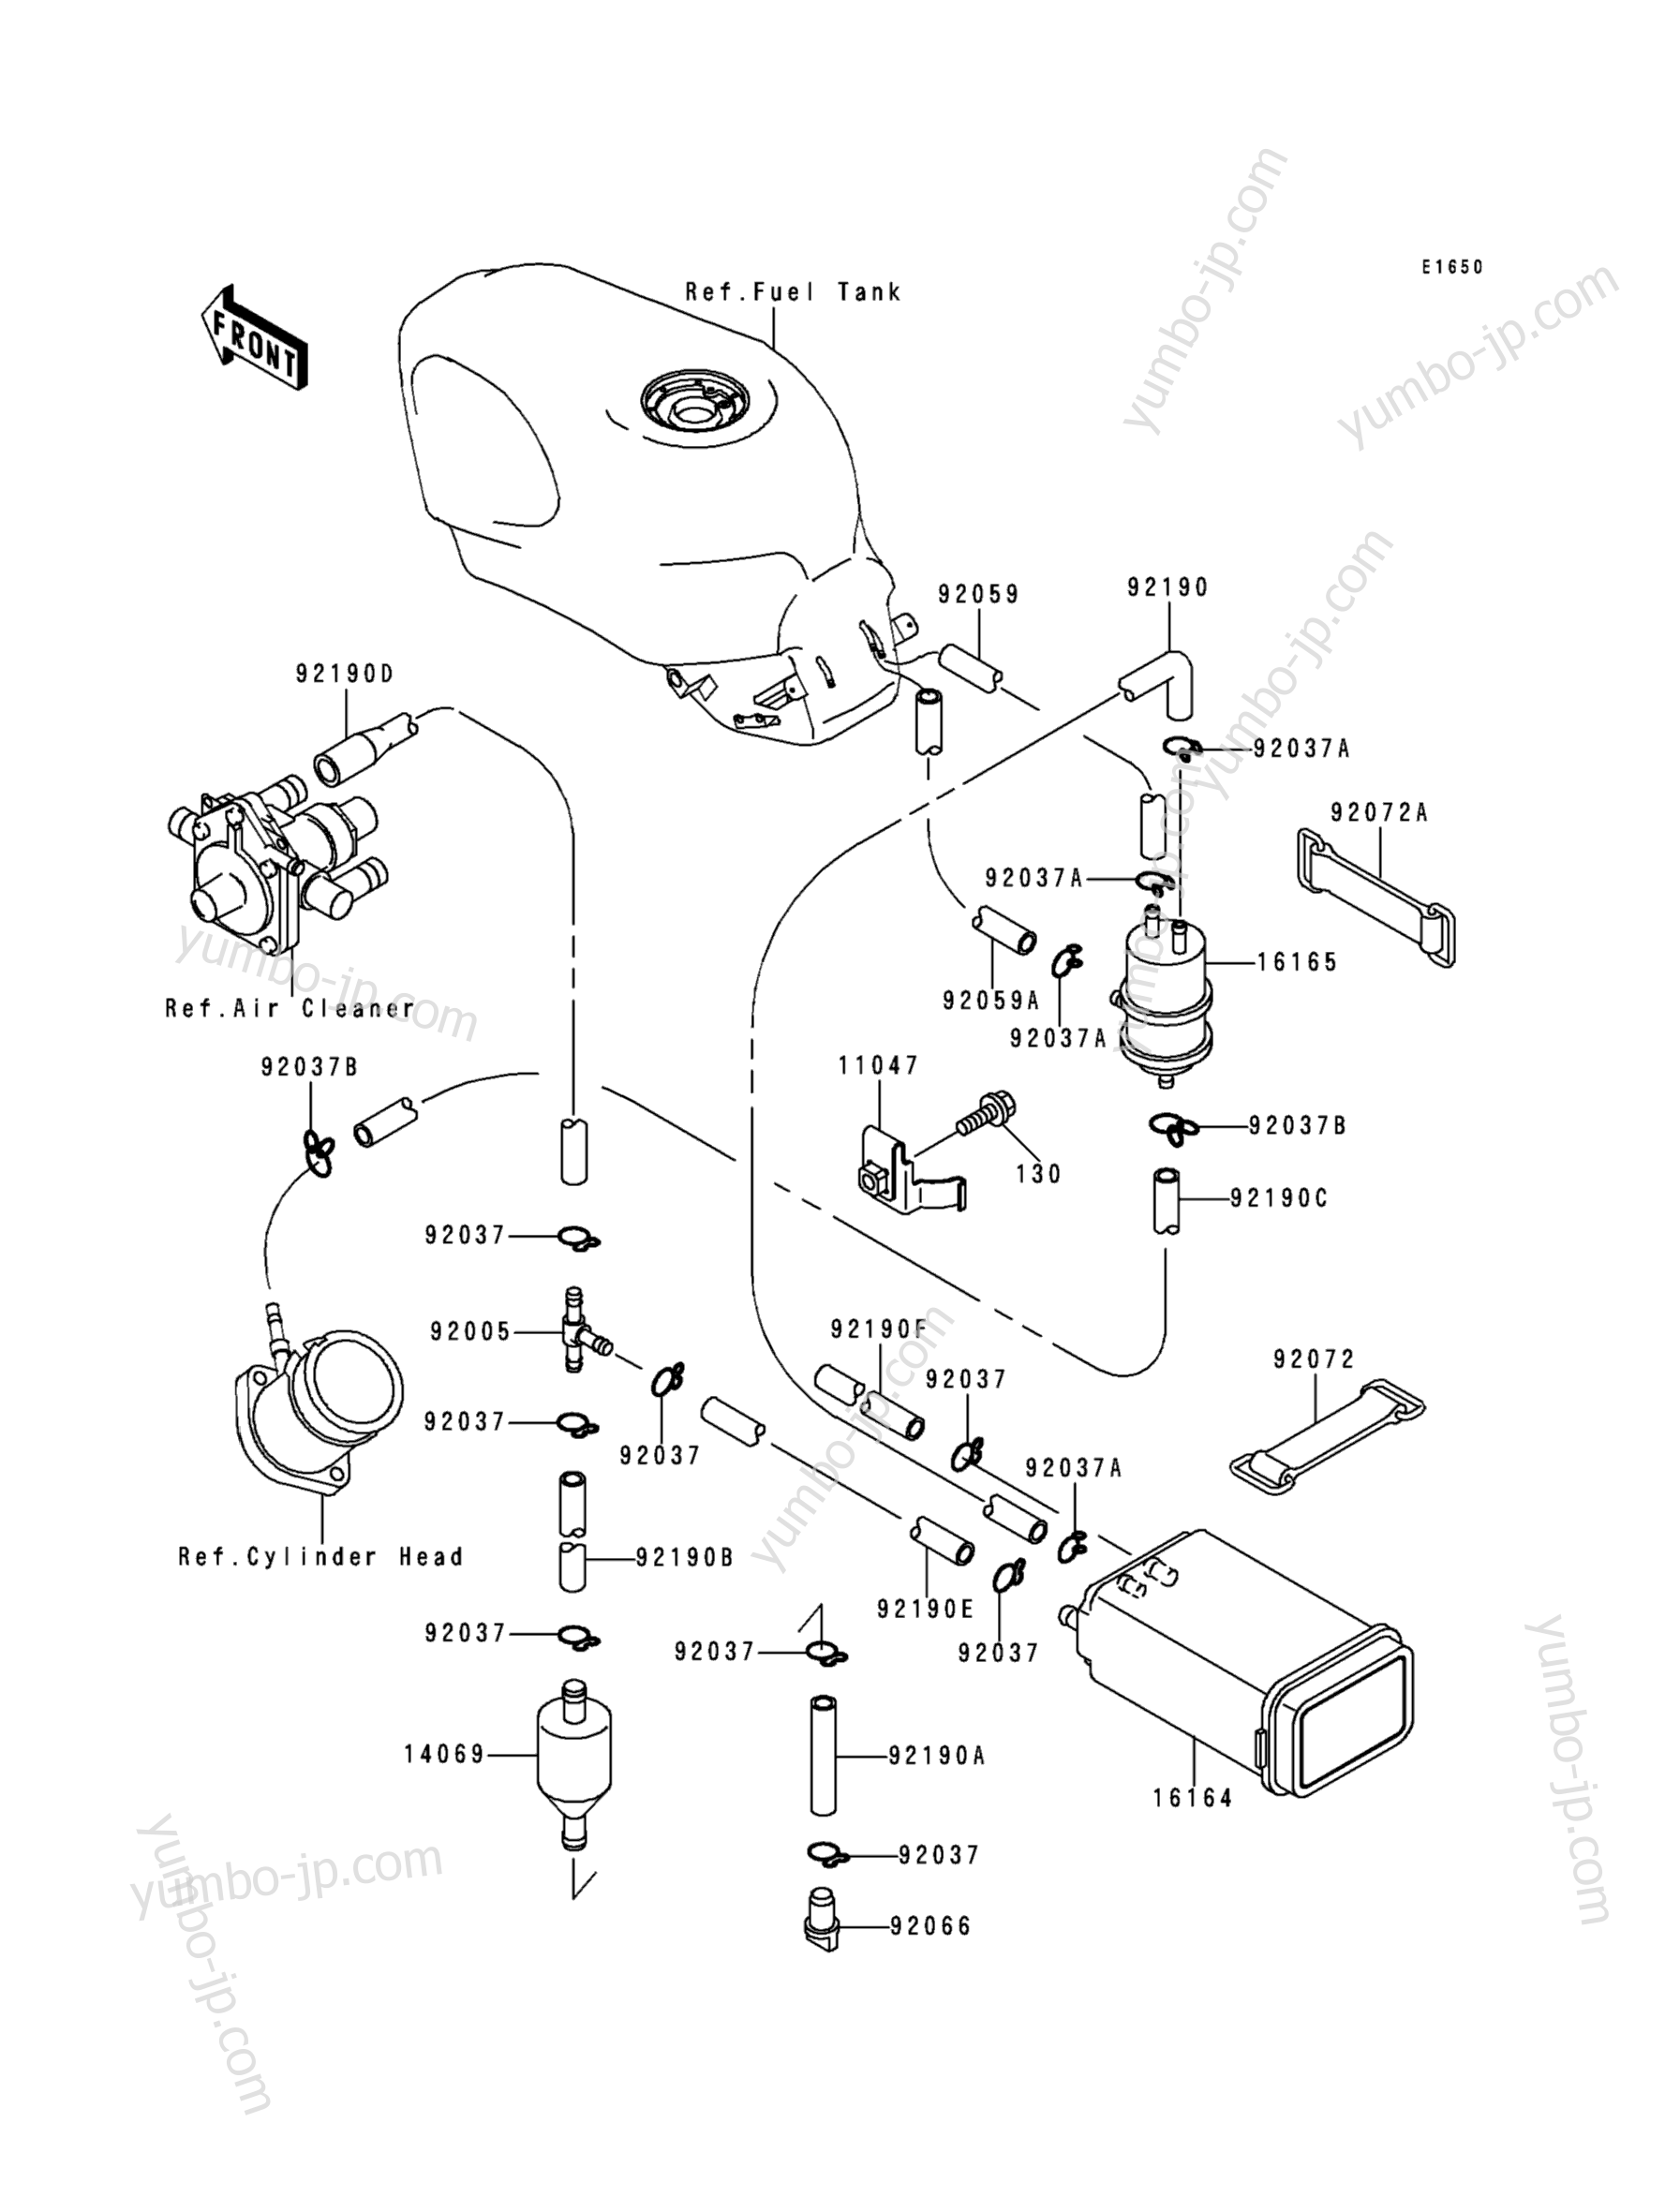 FUEL EVAPORATIVE SYSTEM for motorcycles KAWASAKI NINJA ZX-6 (ZX600-E4) 1996 year